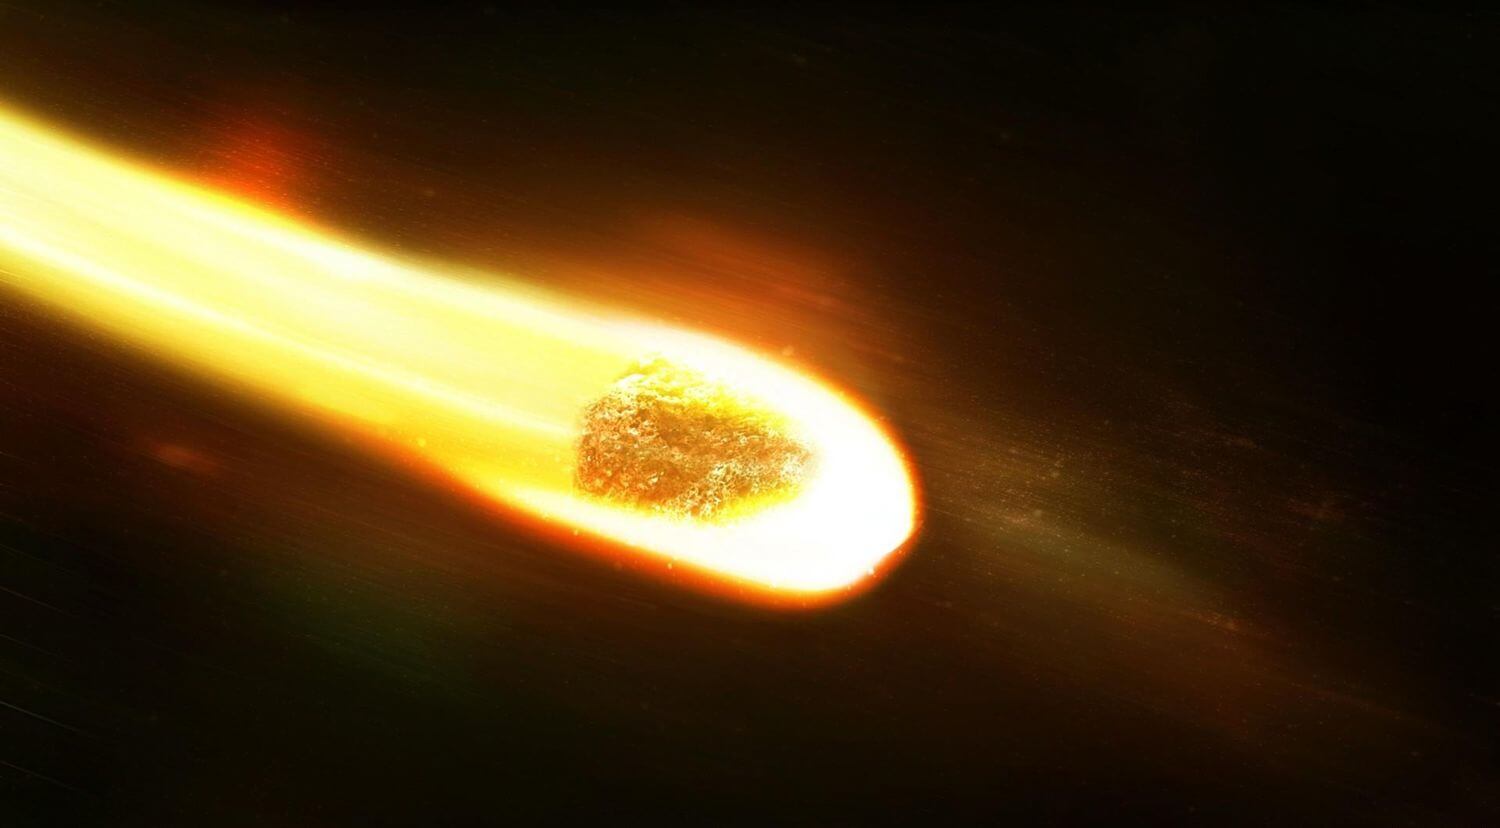 #видео дня | NASA создала симуляцию поведения метеорита в земной атмосфере. Фото.